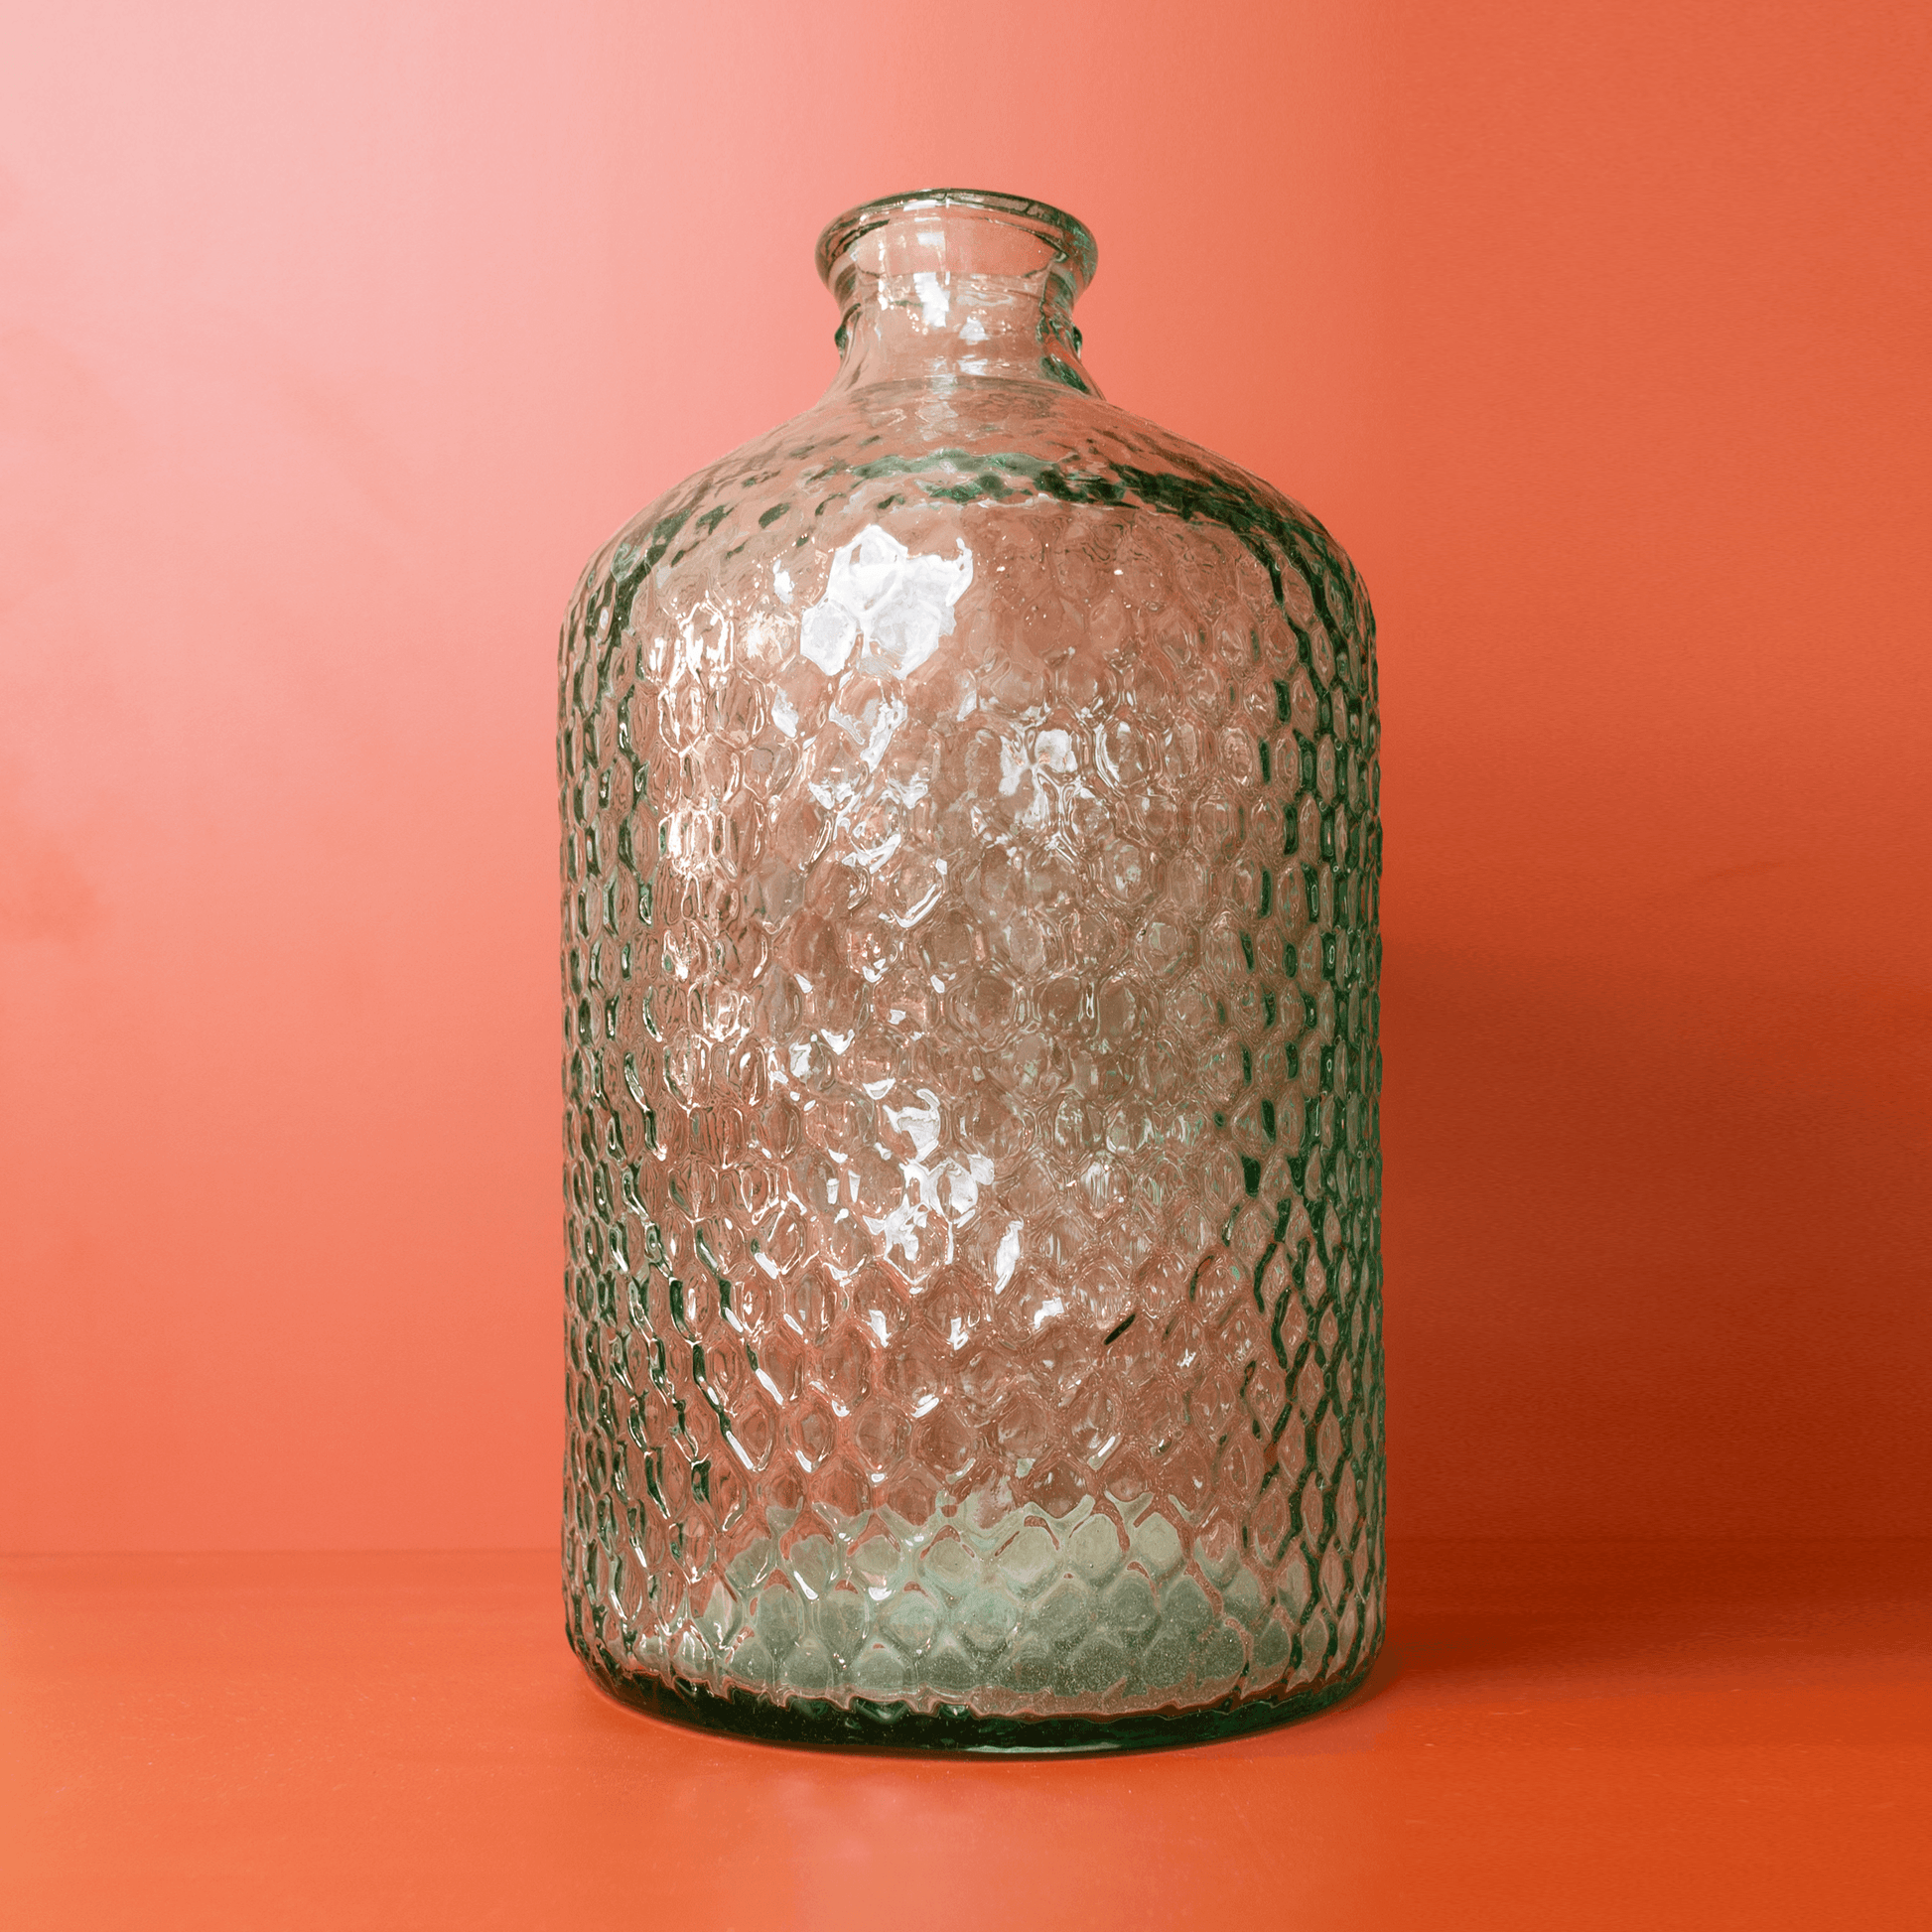 Bottiglione decorativo in vetro - The Rabbit Stool